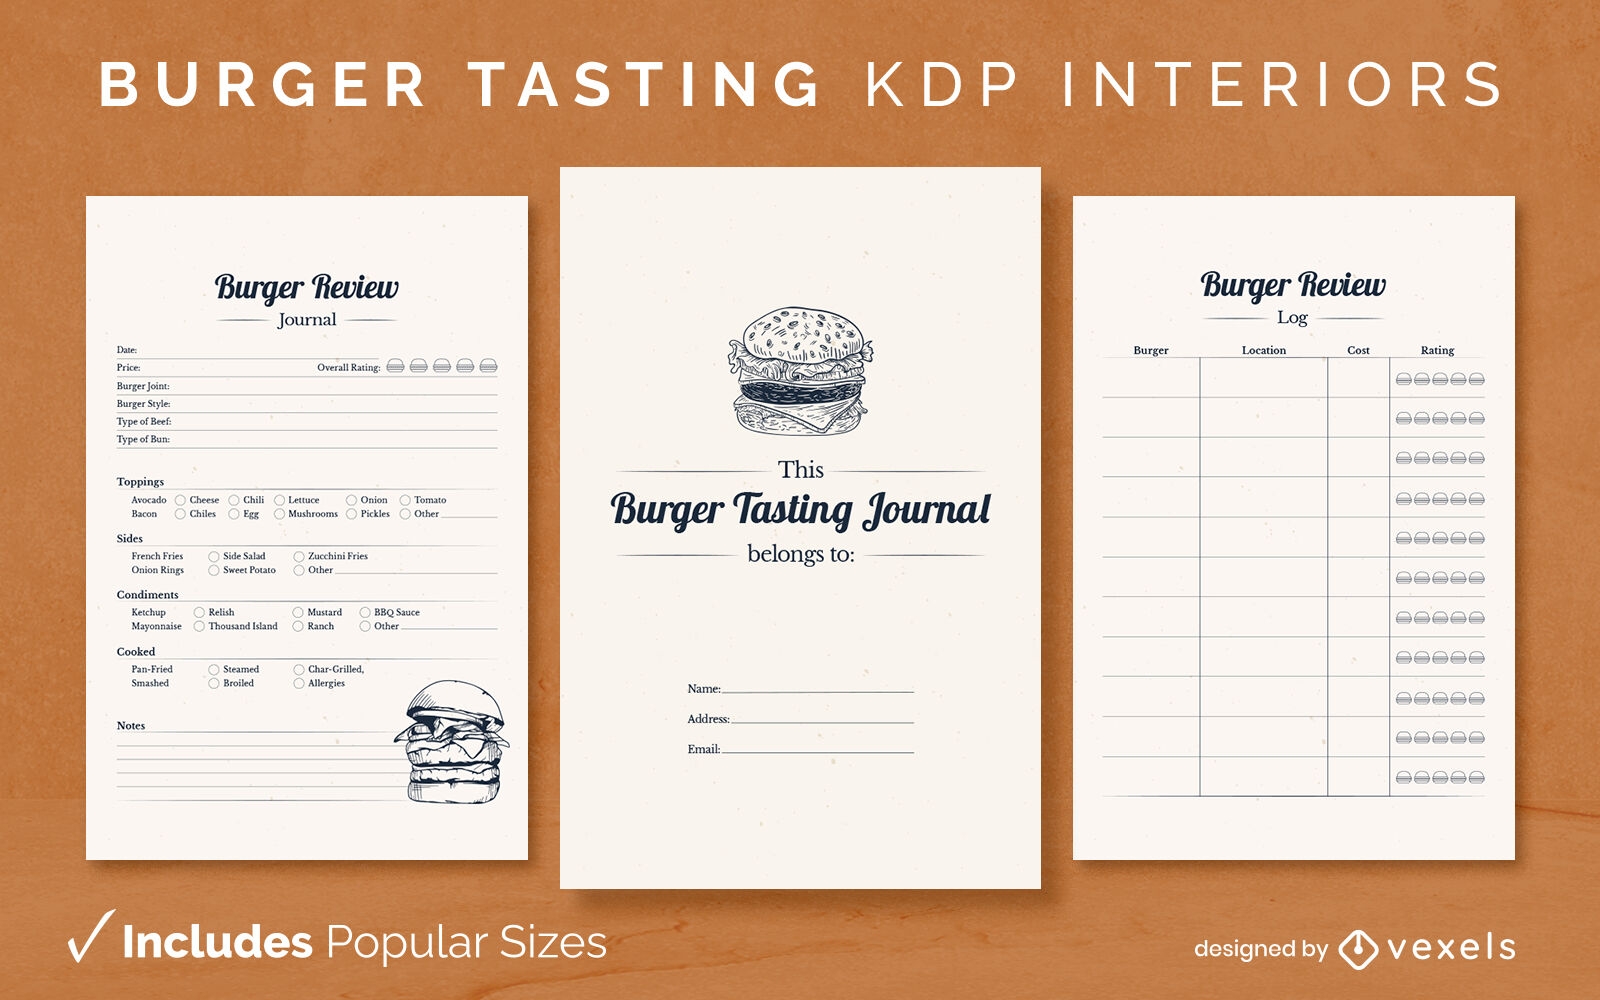 Burger tasting Journal Design Template KDP